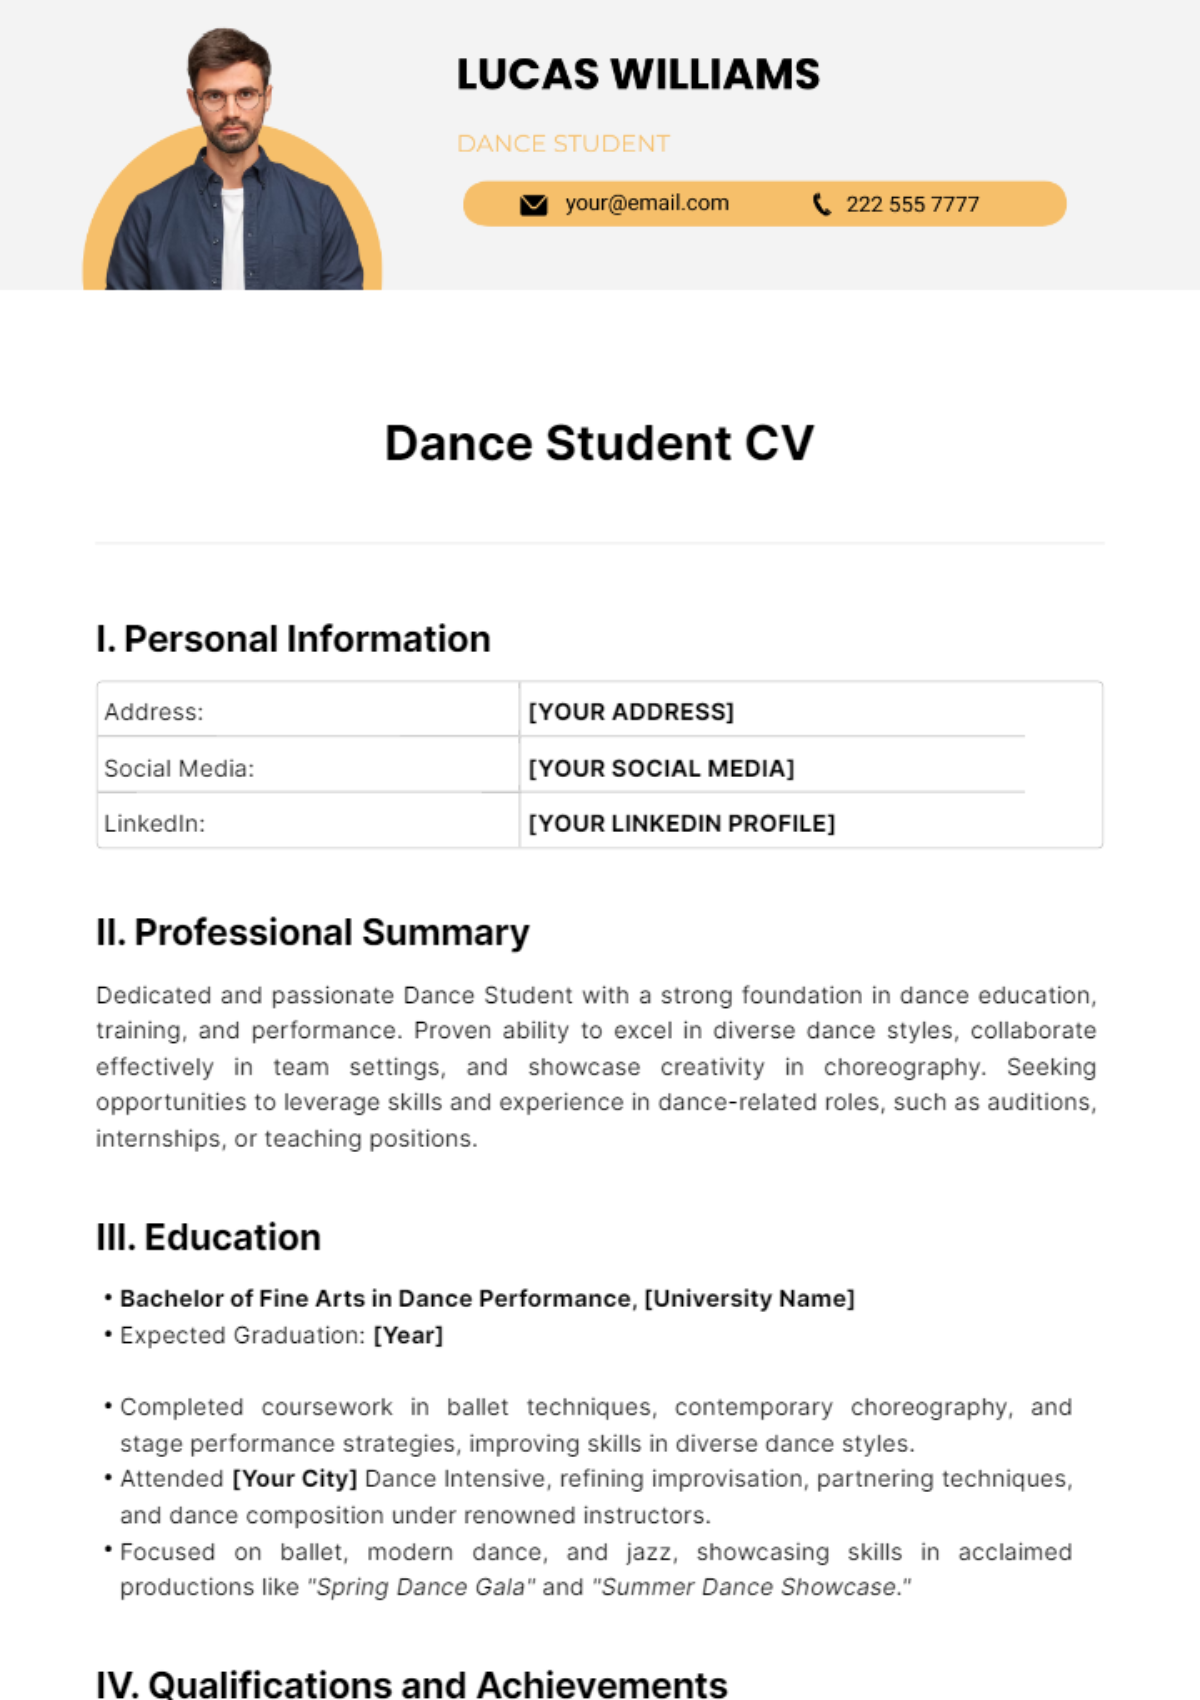 Dance Student CV Template